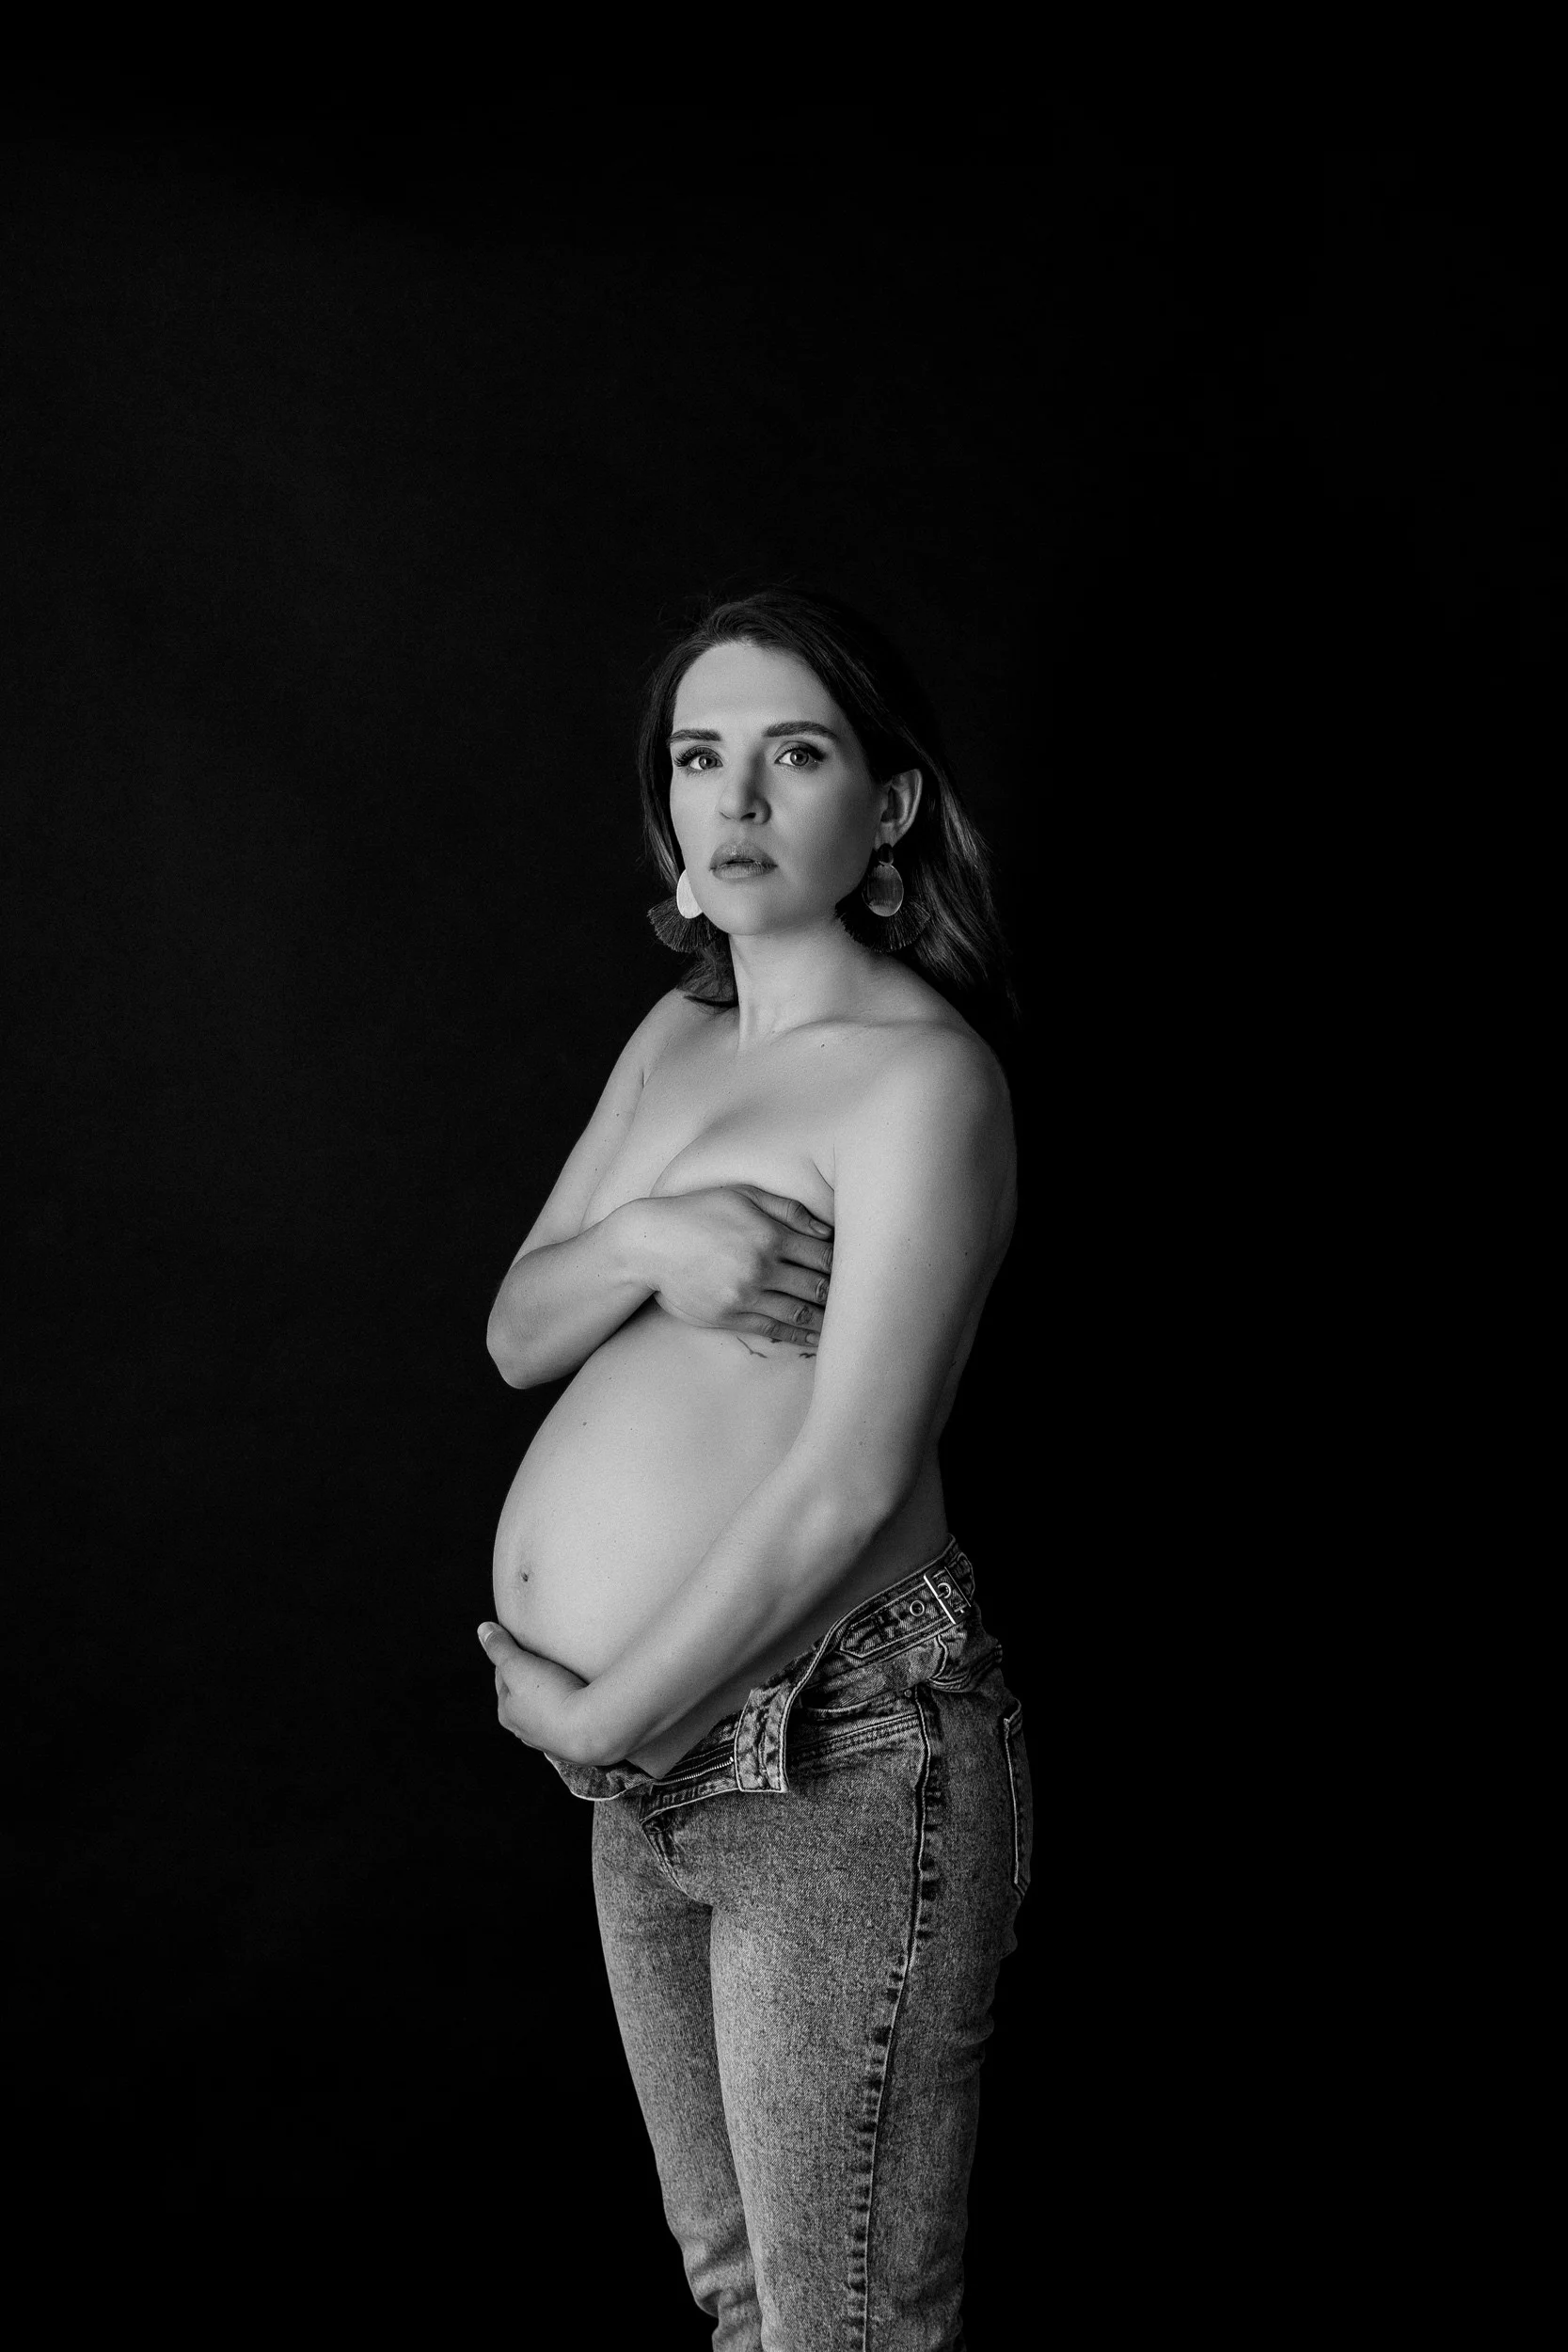 Klic ljubezni: nosečniško fotografiranje v črno-beli tehniki v našem fotografskem studiu v Ljubljani